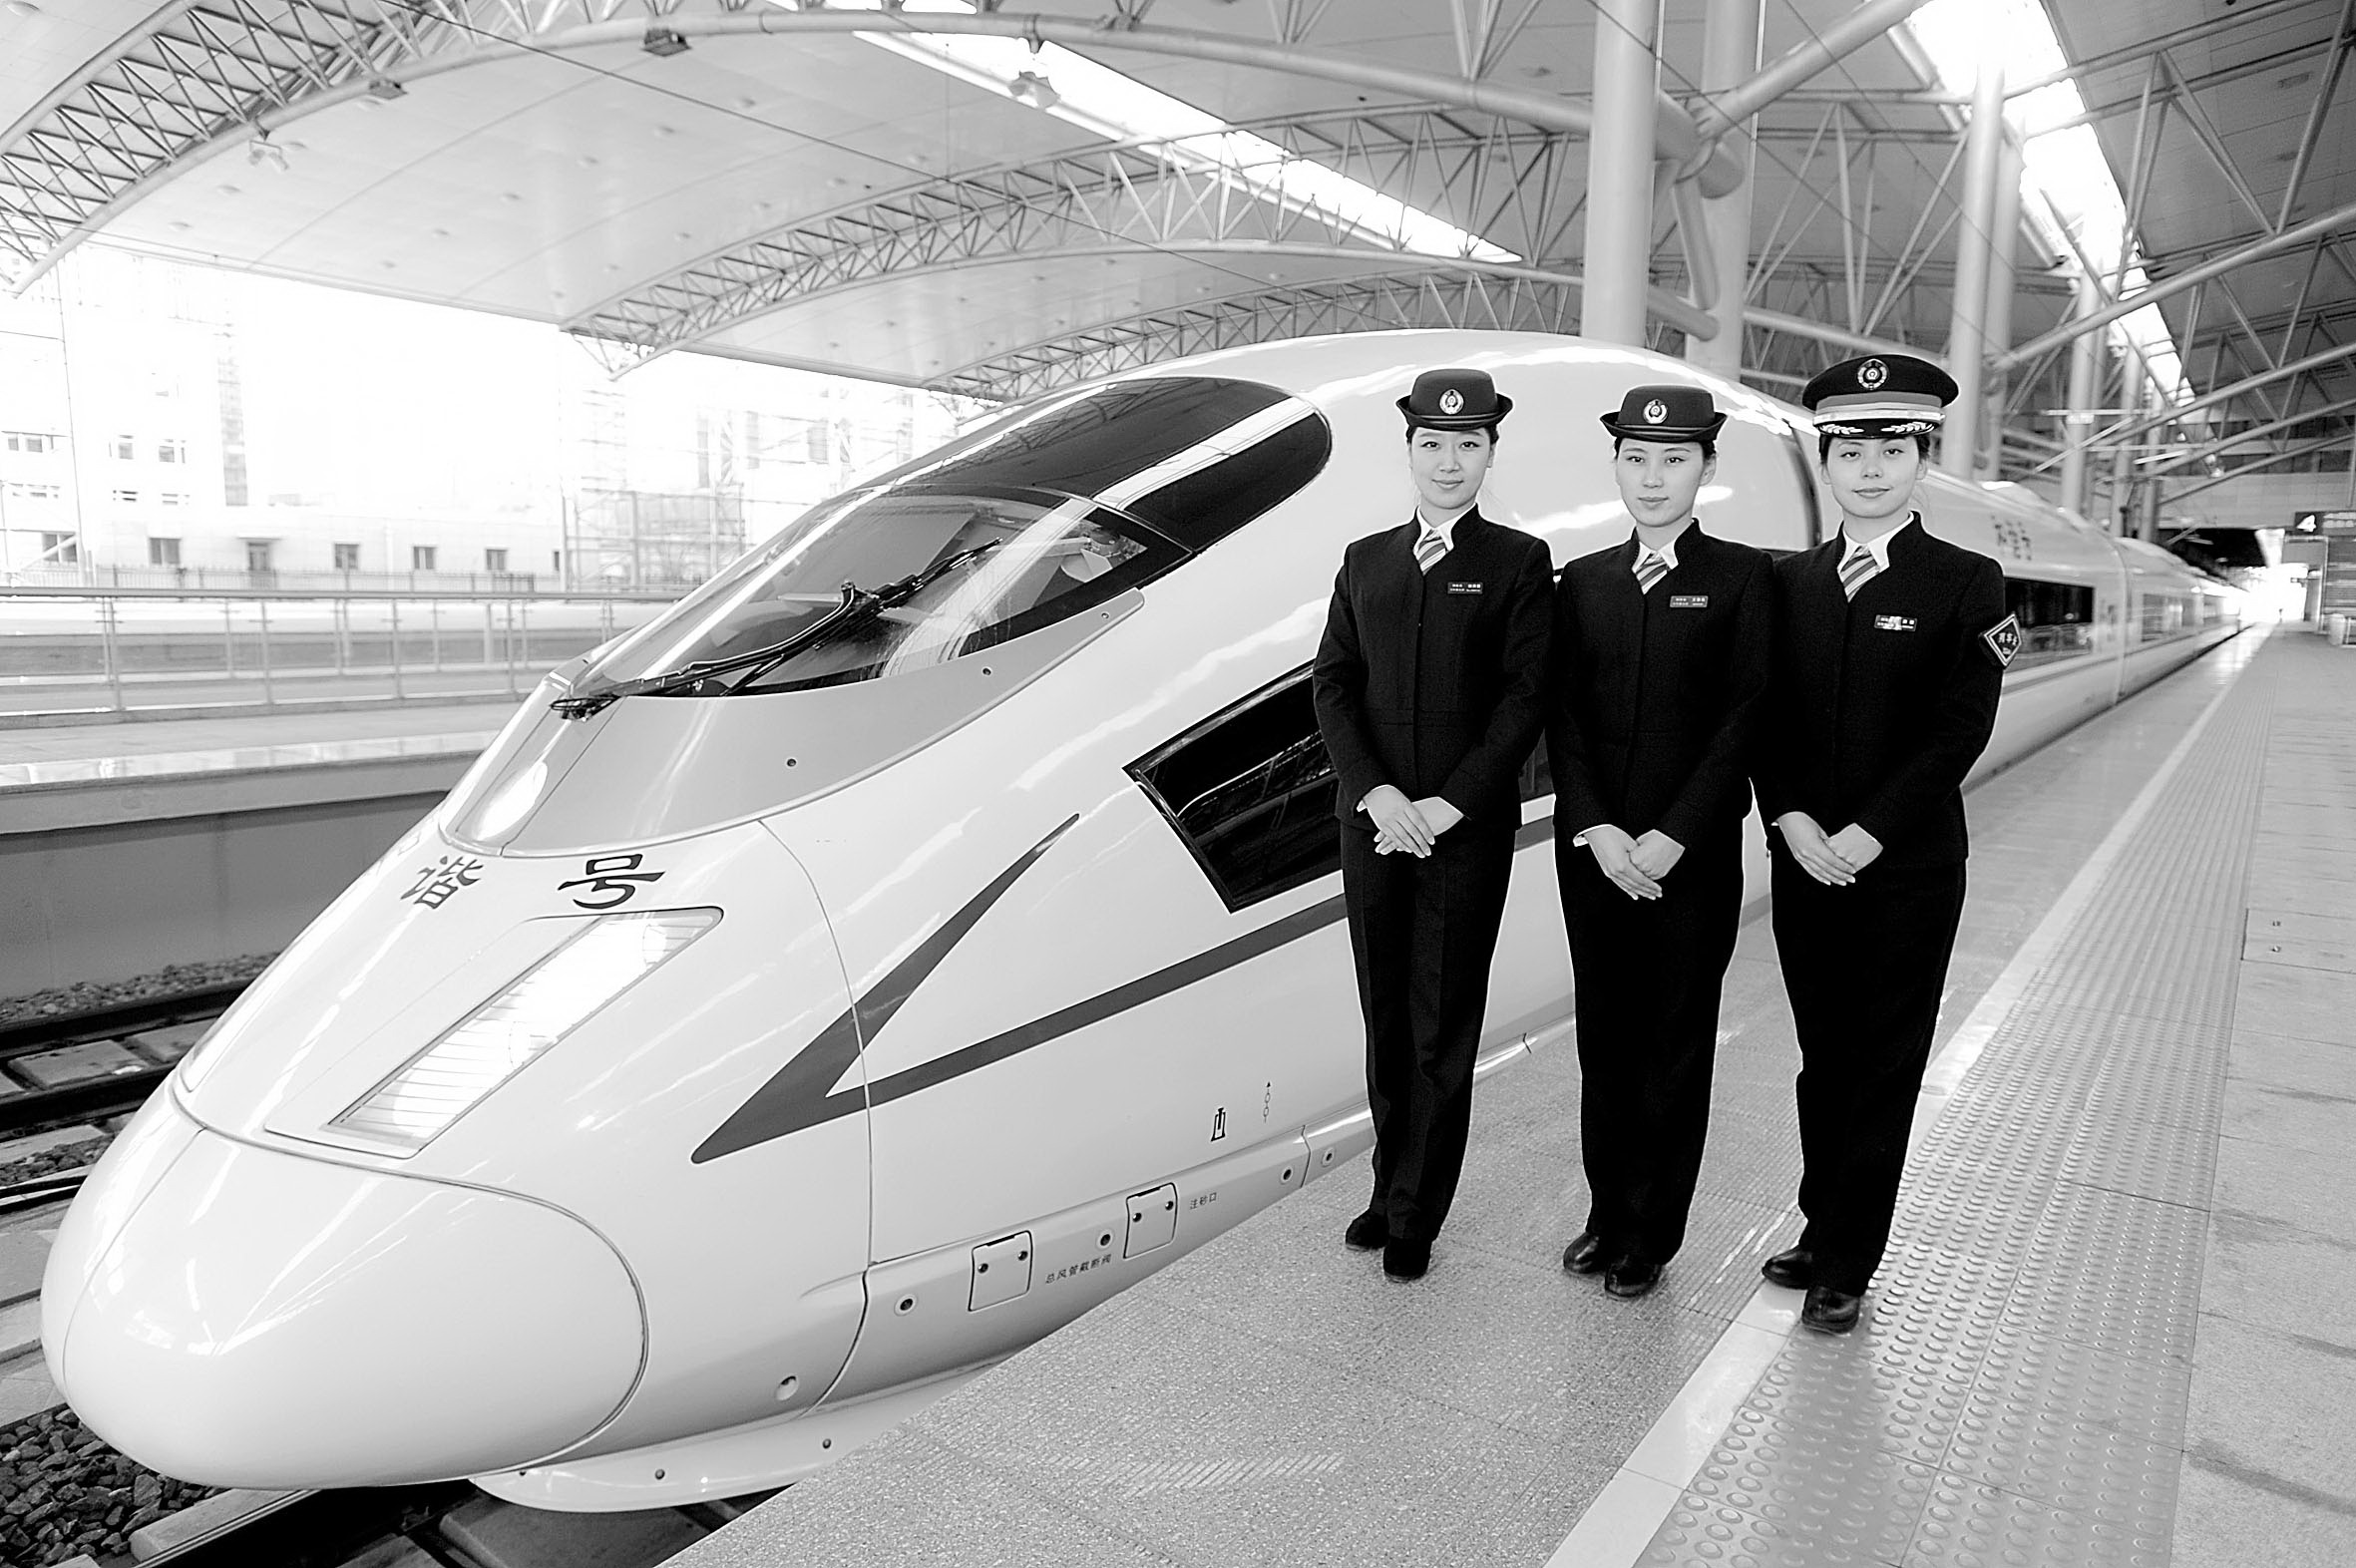 高铁乘务员开展安全作业等培训迎接哈尔滨至大连高速铁路的开通(图)